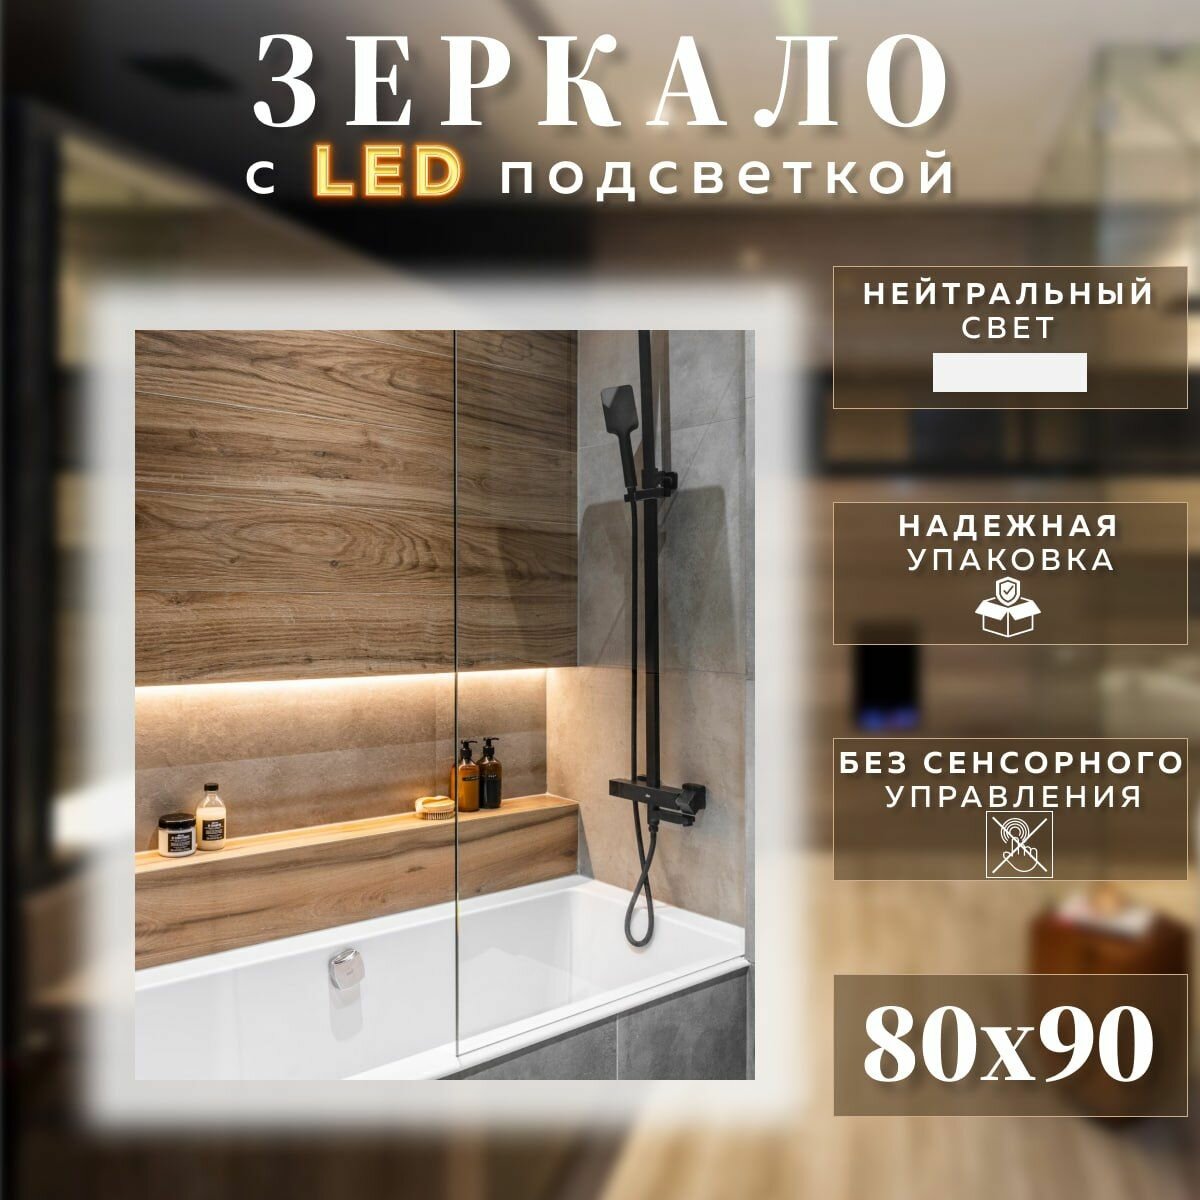 Зеркало с подсветкой для ванной прямоугольное без сенсора нейтральный свет 4500К 80 на 90 см